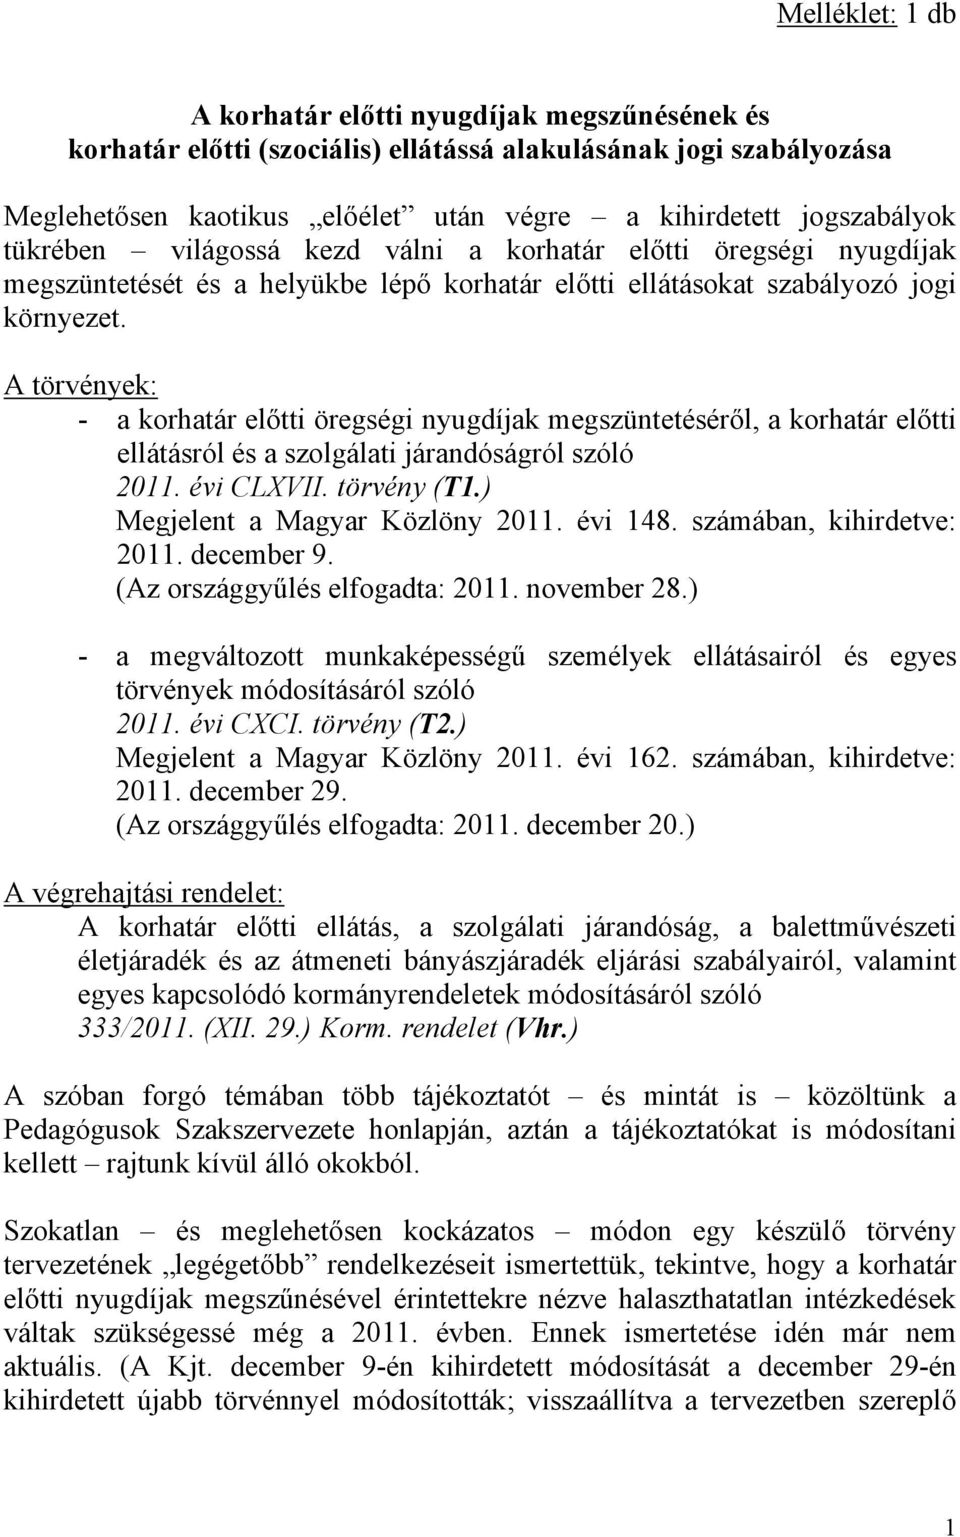 A törvények: - a korhatár előtti öregségi nyugdíjak megszüntetéséről, a korhatár előtti ellátásról és a szolgálati járandóságról szóló 2011. évi CLXVII. törvény (T1.) Megjelent a Magyar Közlöny 2011.